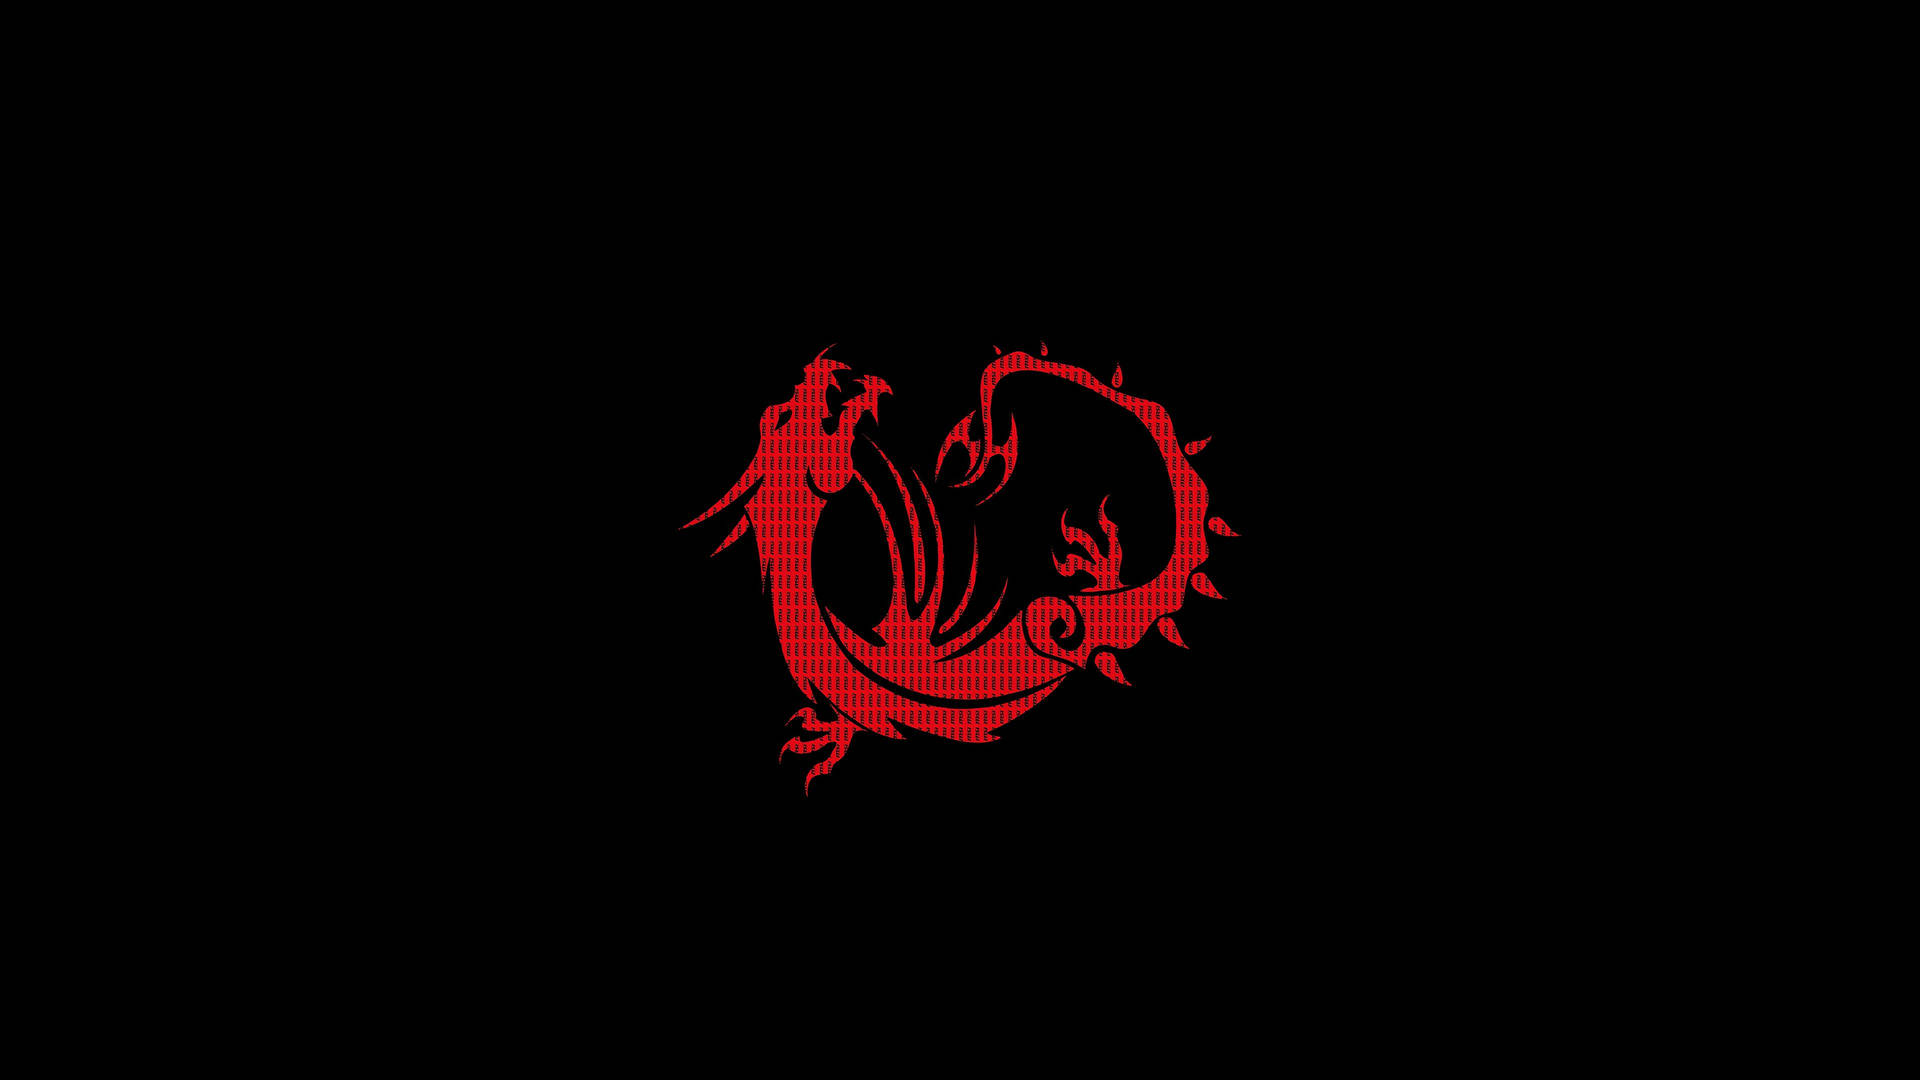 Msi 4k Red Dragon In Black Background